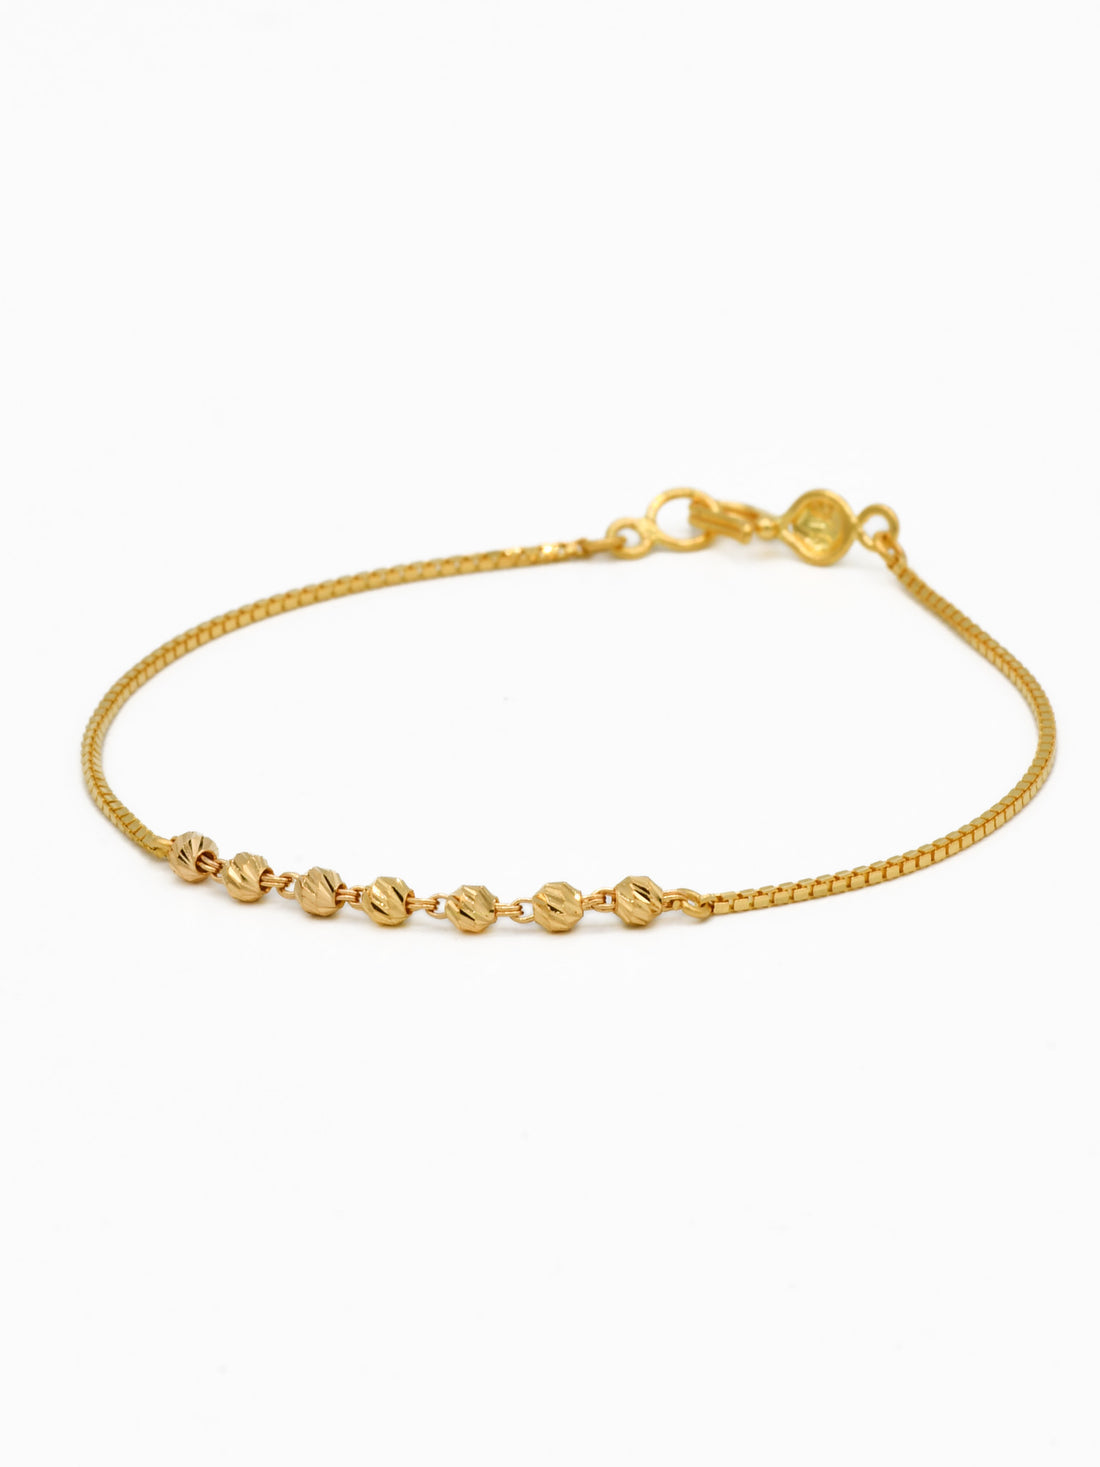 22ct Gold Ball Ladies Bracelet - Roop Darshan